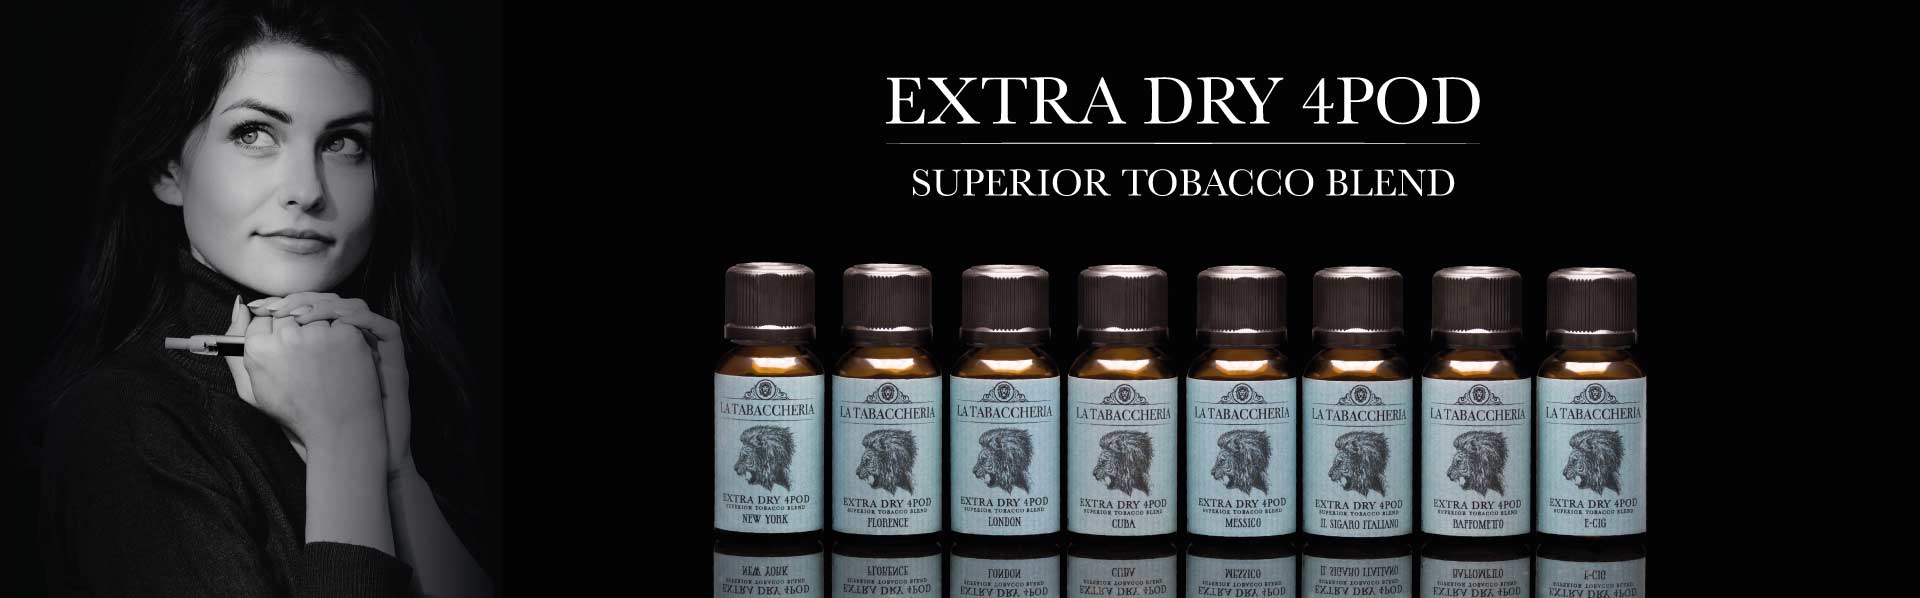 La Tabaccheria Extra Dry 4POD aroma 20ml Superior Tobacco Blend la tabaccheria extra dry 4pod aroma 20ml La Tabaccheria Extra Dry 4POD aroma 20ml la tabaccheria extra dry slide 2